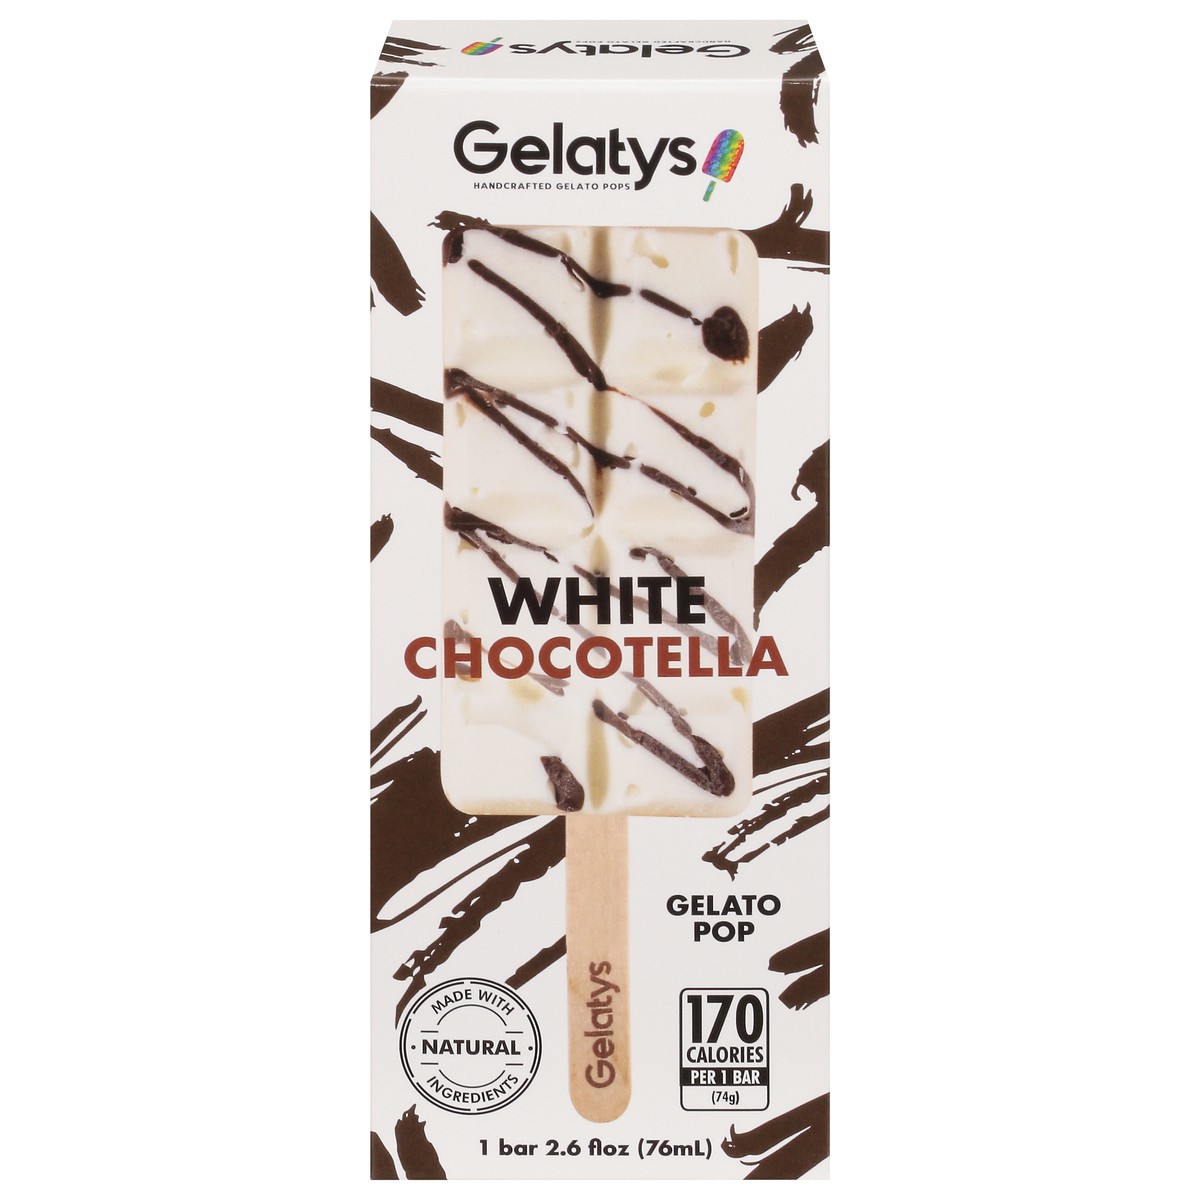 slide 1 of 10, Gelatys Handcrafted Gelato Pop - White Chocotella, 2.6 fl oz